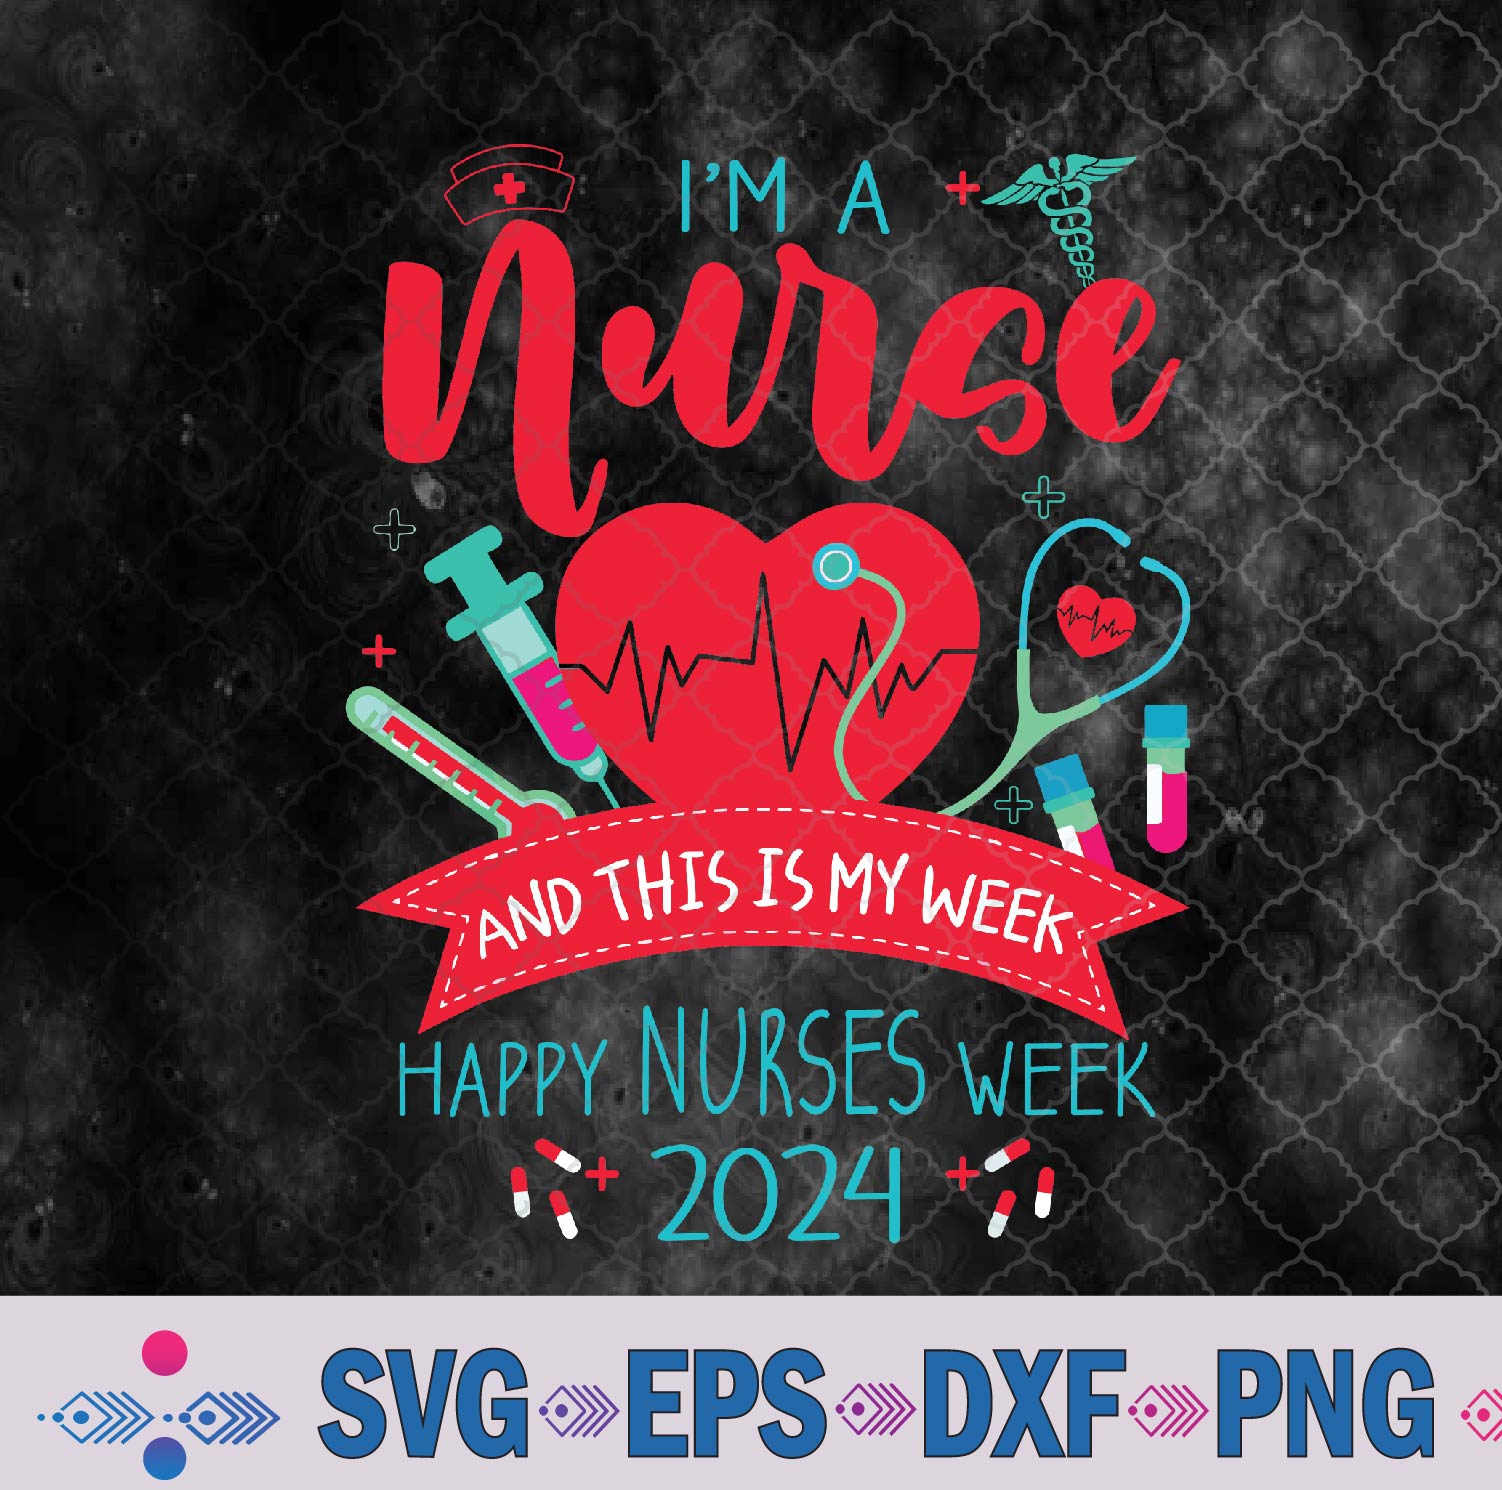 Im A Nurse And This Is My Week Happy Nurses Week 2024 Svg, Png, Digital Download